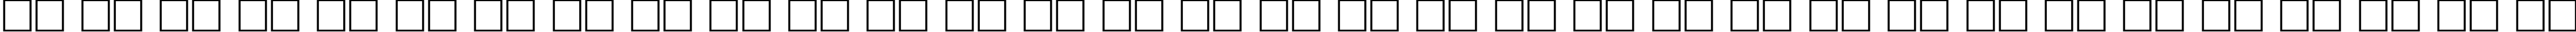 Пример написания русского алфавита шрифтом Verve